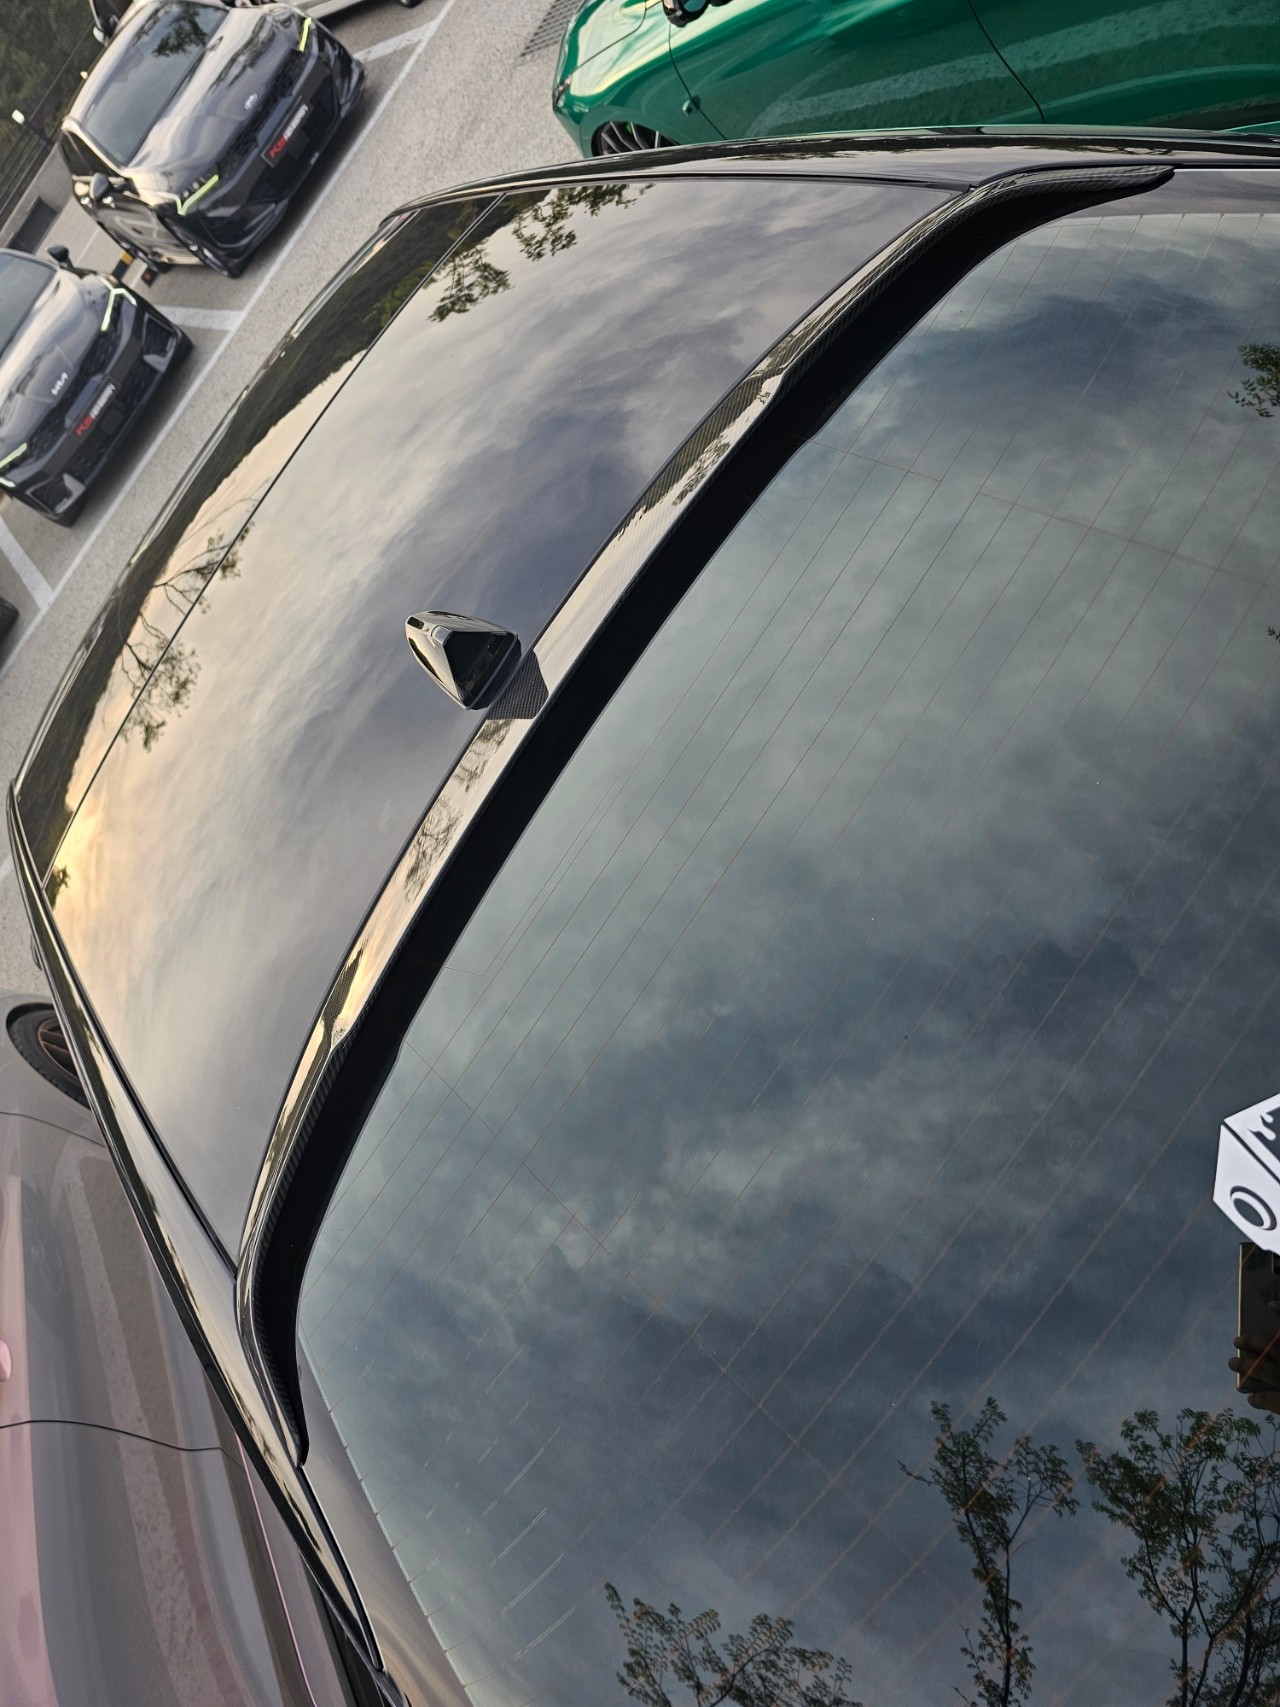 자동차, 야외, 차량, 거울이(가) 표시된 사진

자동 생성된 설명